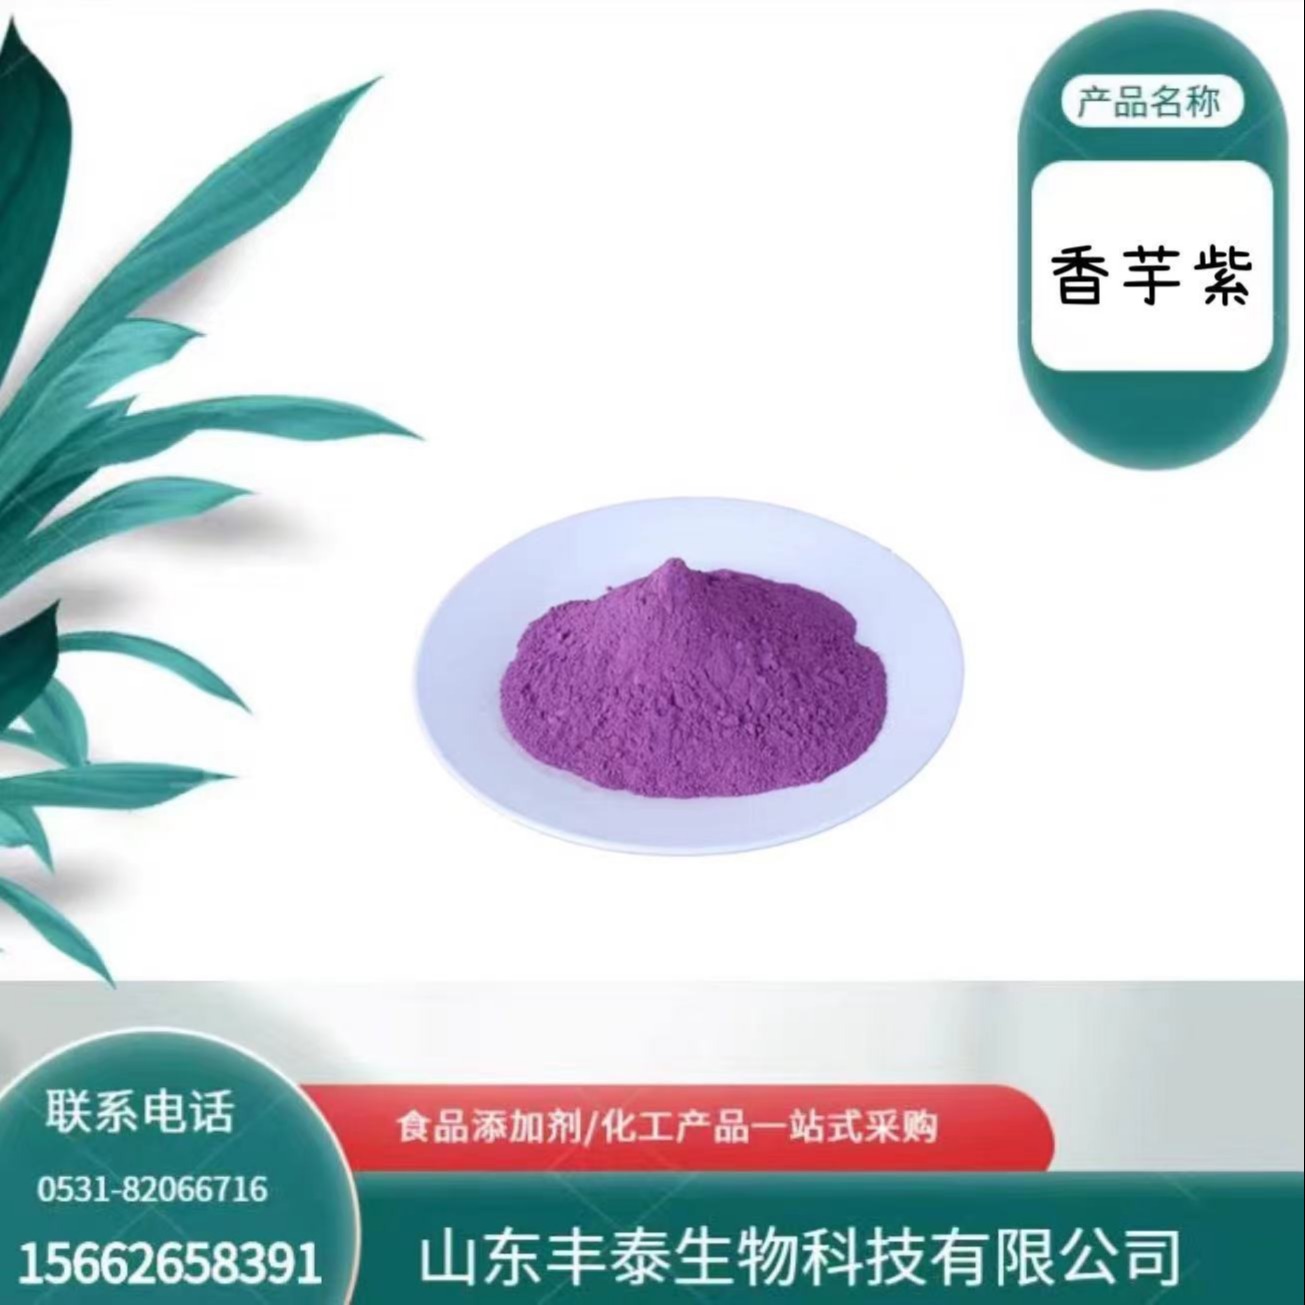 现货香芋紫色素 烘焙饮料用色素食品级着色剂 水溶性香芋紫色素 丰泰